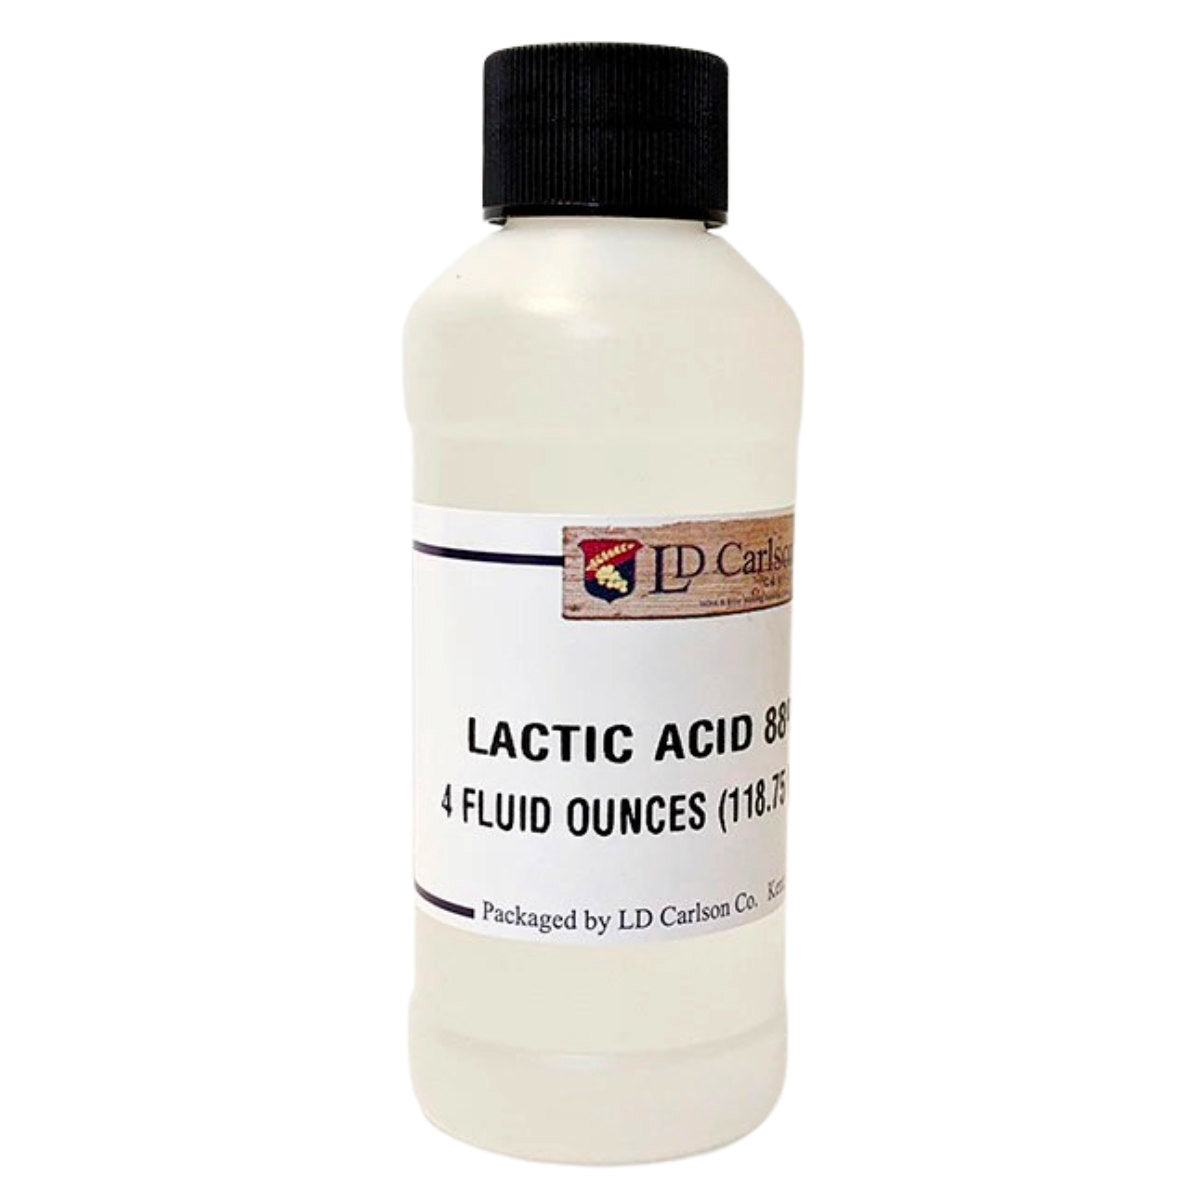 Lactic acid 88%